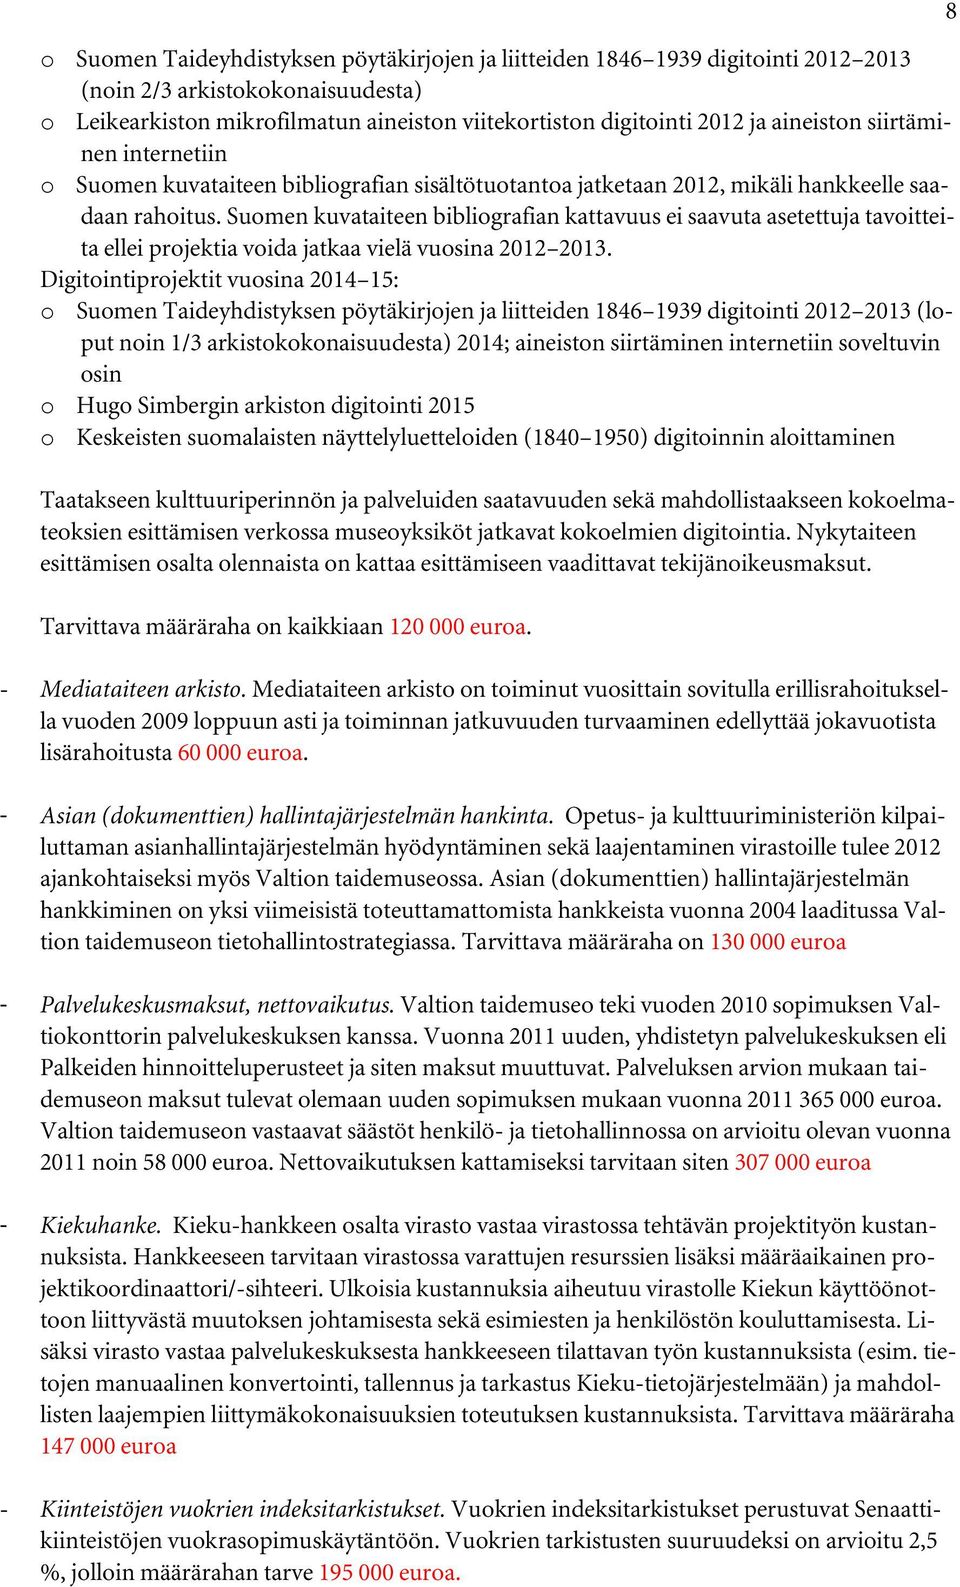 Suomen kuvataiteen bibliografian kattavuus ei saavuta asetettuja tavoitteita ellei projektia voida jatkaa vielä vuosina 2012 2013.